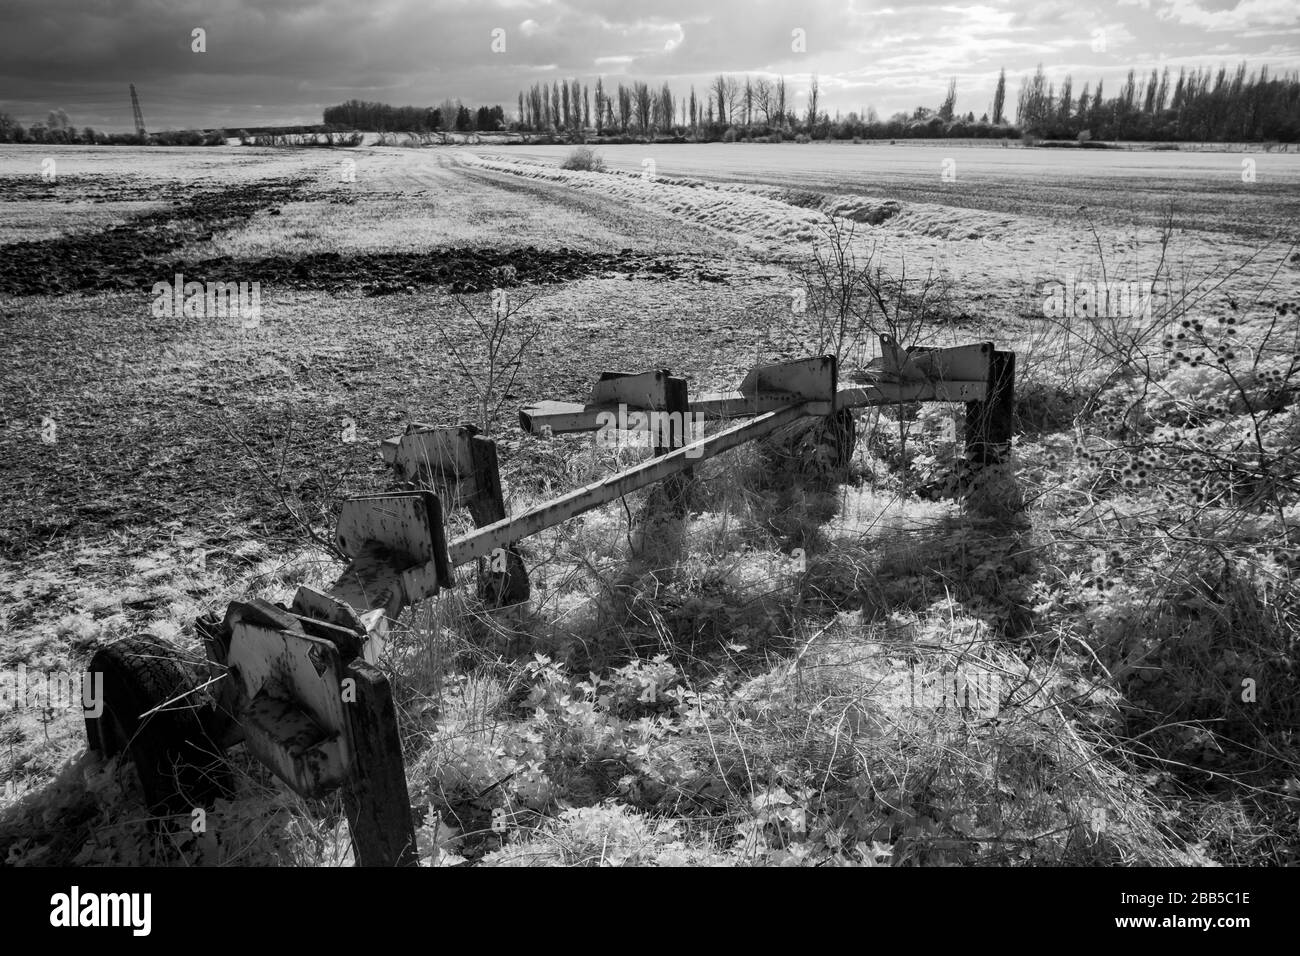 Maquinaria agrícola abandonada, imagen tomada en infrarrojo cercano (720nm), Warwickshire, Reino Unido Foto de stock